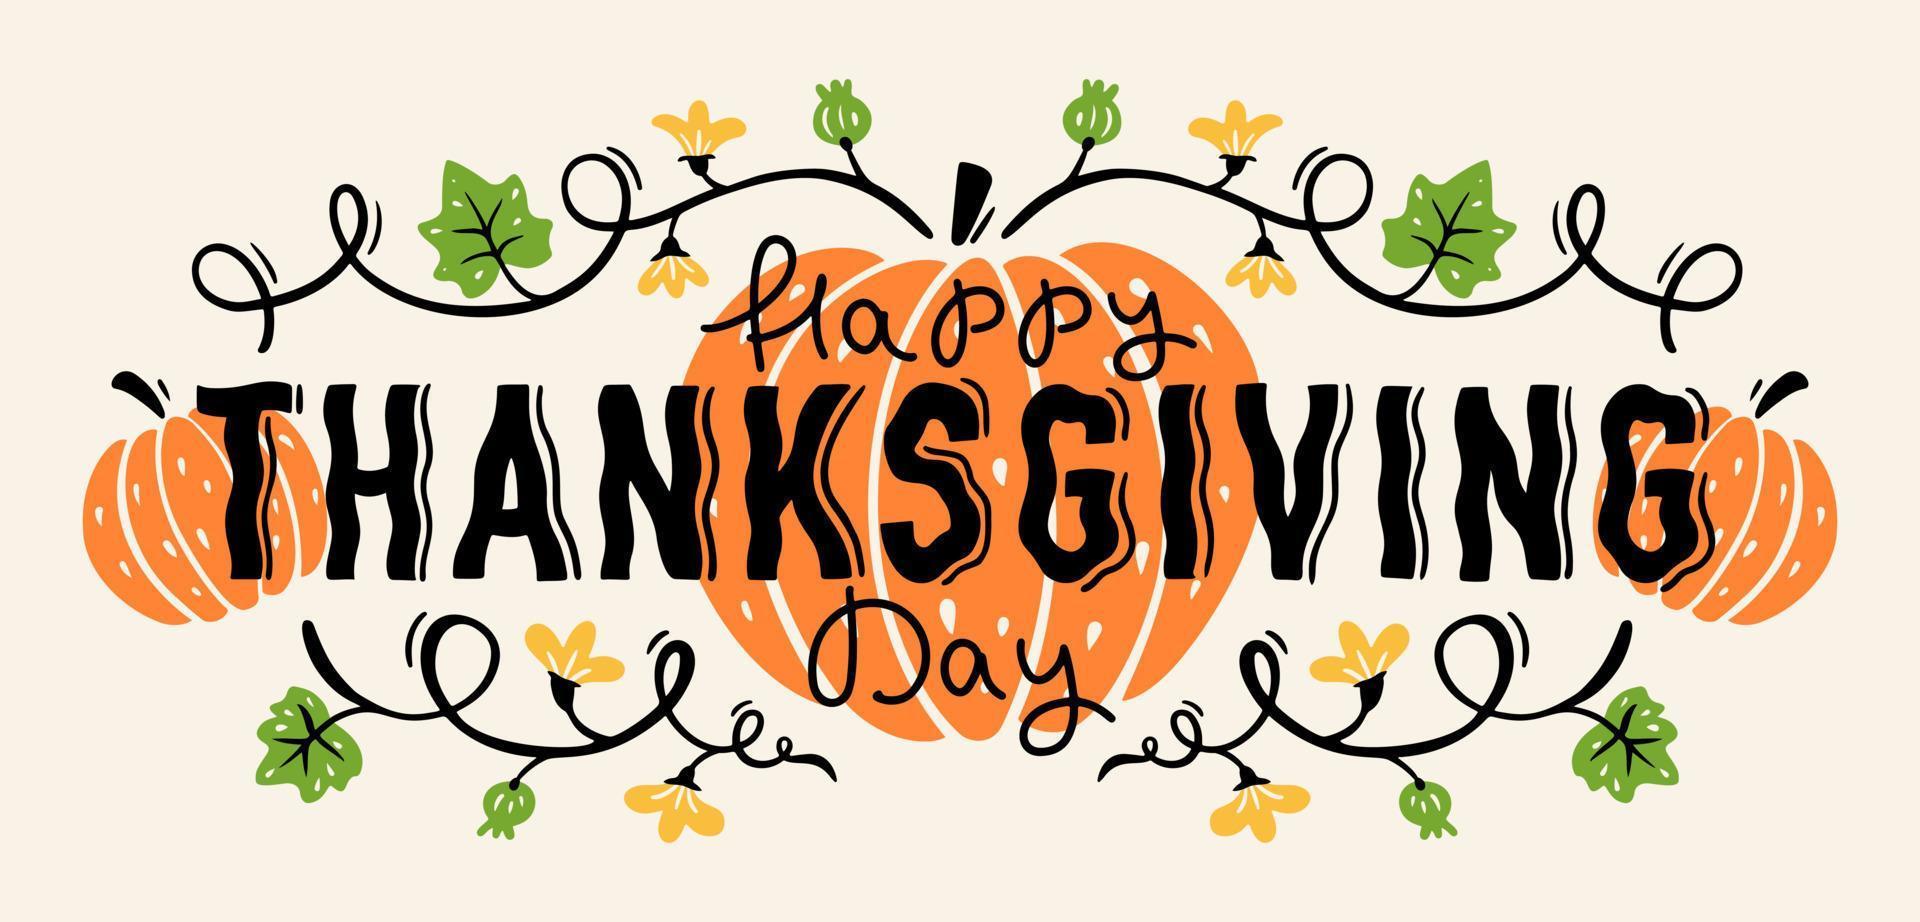 fond avec des citrouilles et des lettres dessinées à la main joyeux jour de thanksgiving vecteur